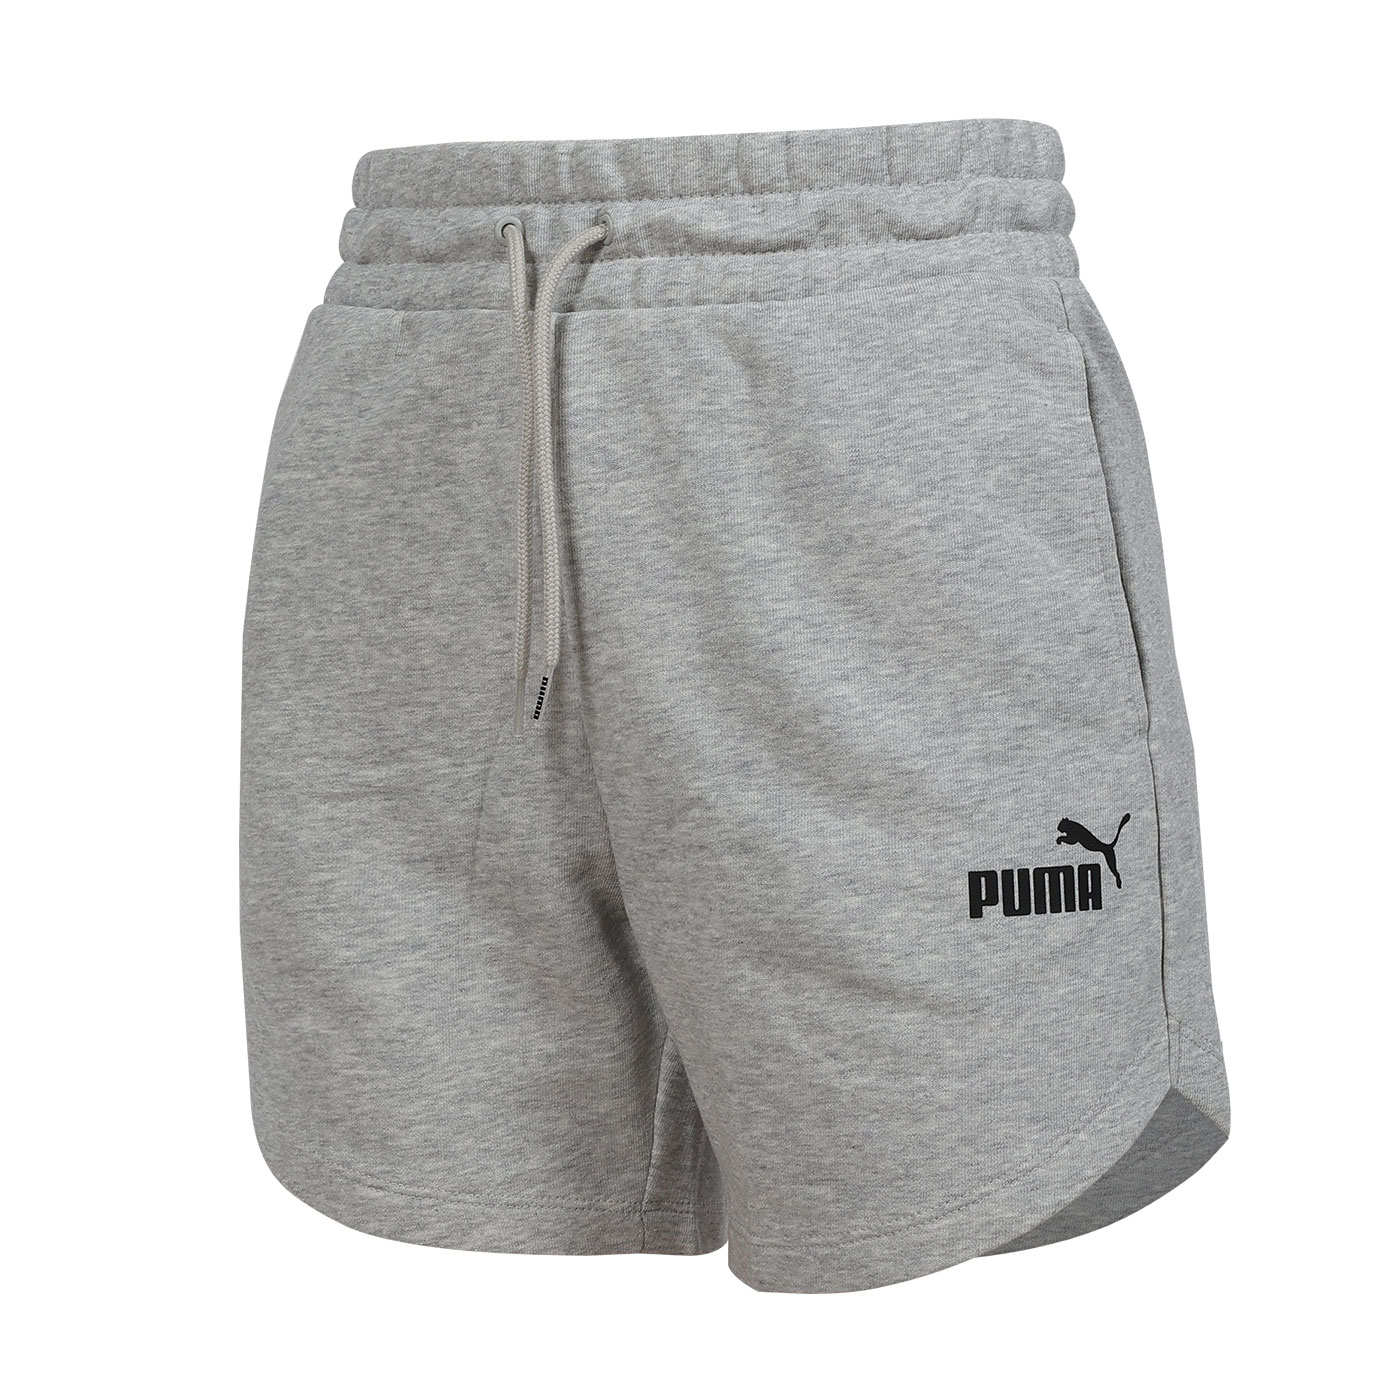 PUMA 女款基本系列ESS 5吋高腰短褲  84833904 - 灰黑